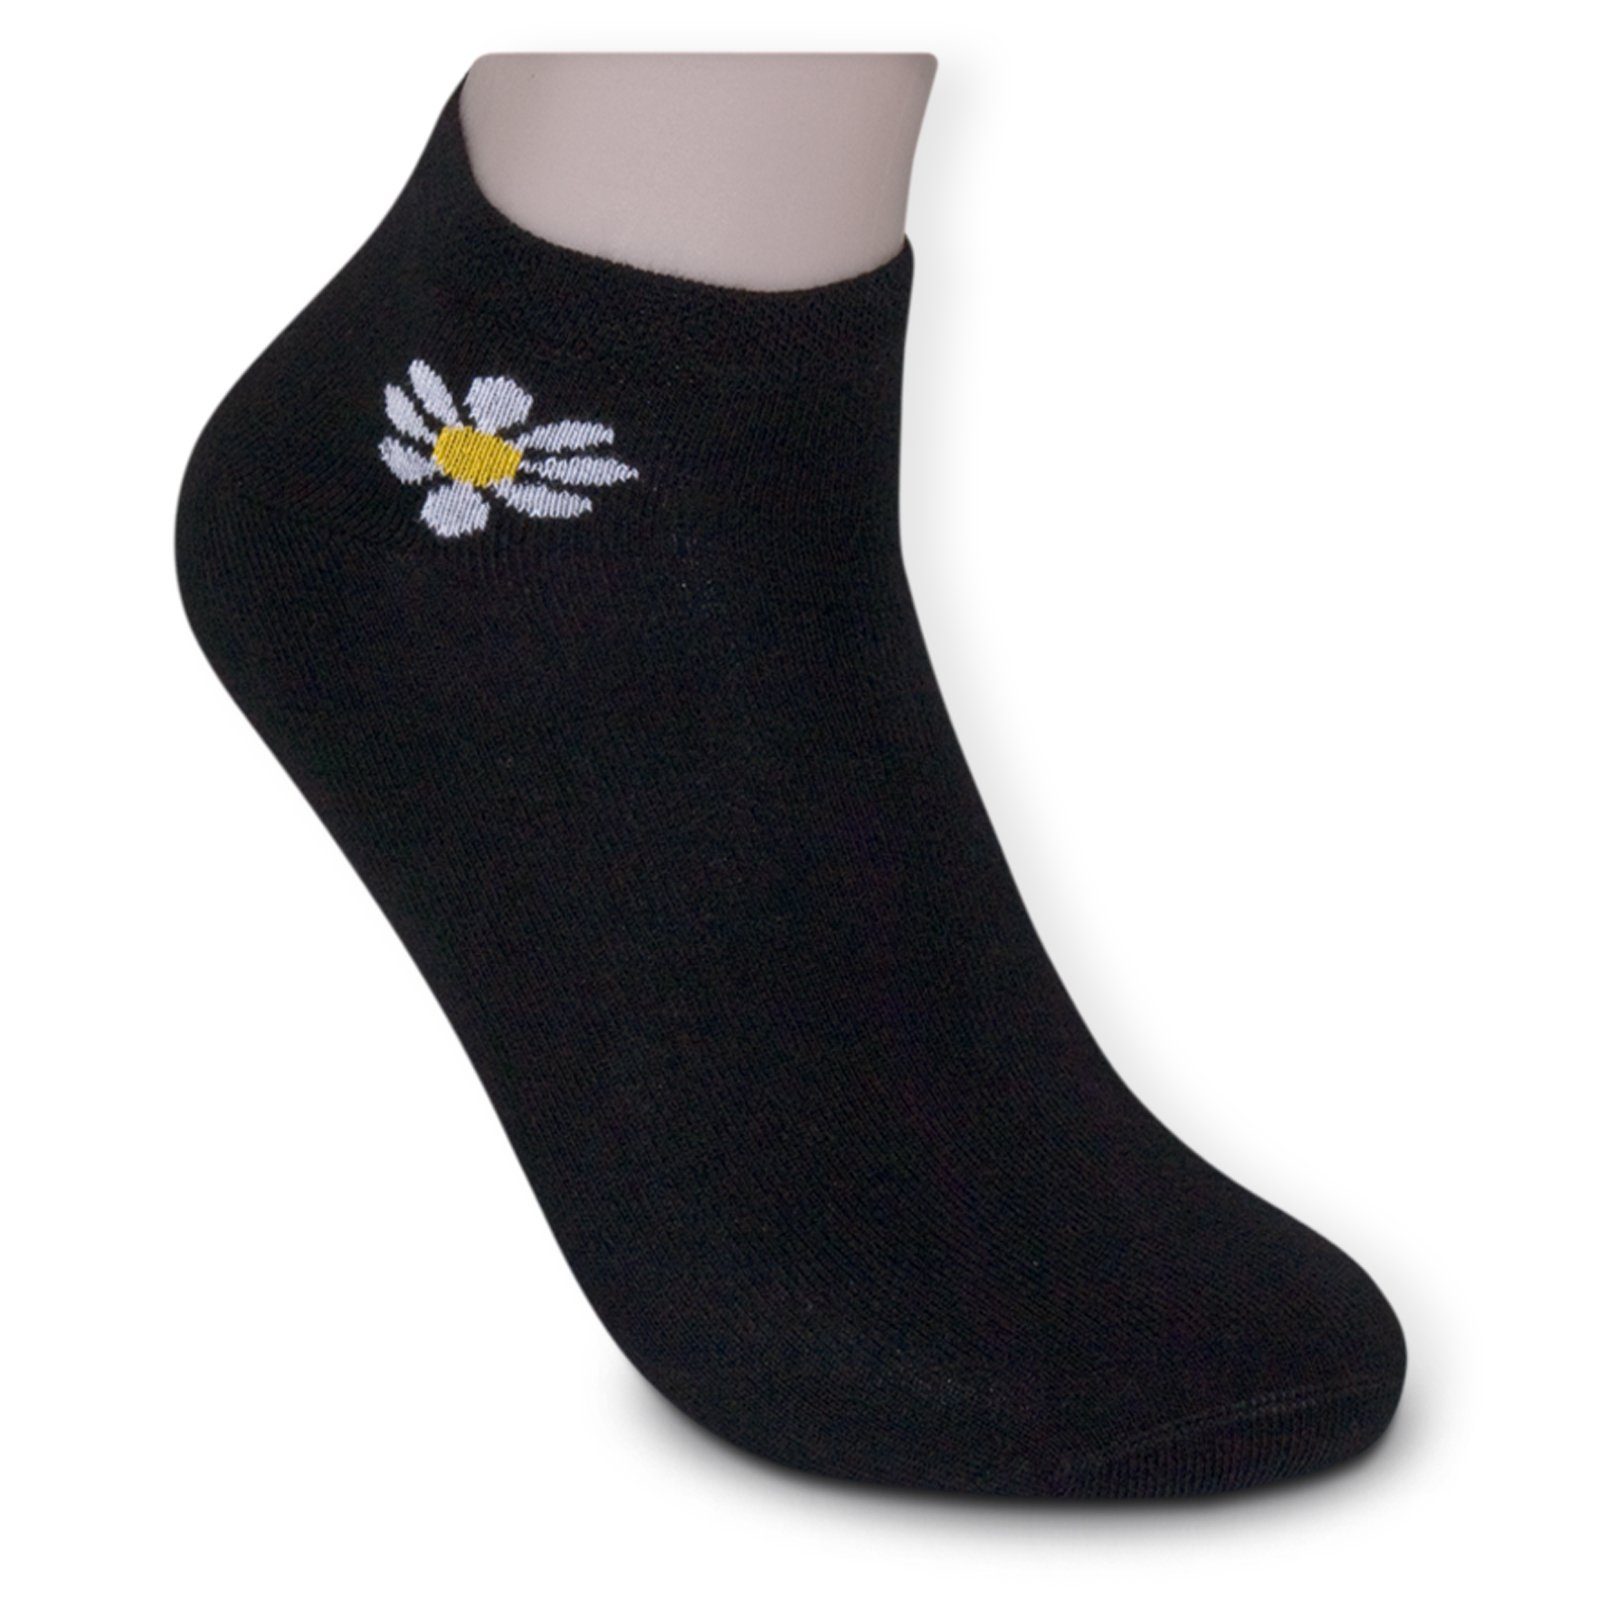 Die Sockenbude Sneakersocken Soft Piqué-Bund schwarz weiß 4-Paar, FLOWER mit gelb) (Bund